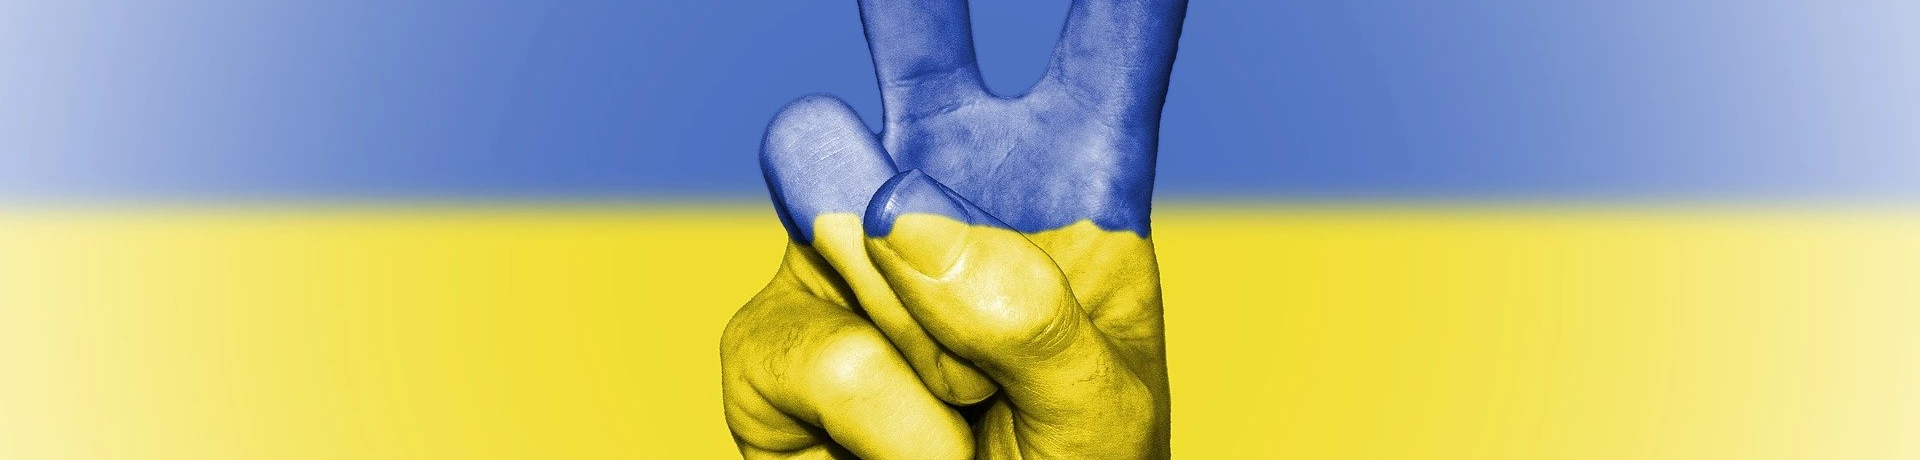 1.000€ Spende an Ukraine + Spendenaktion